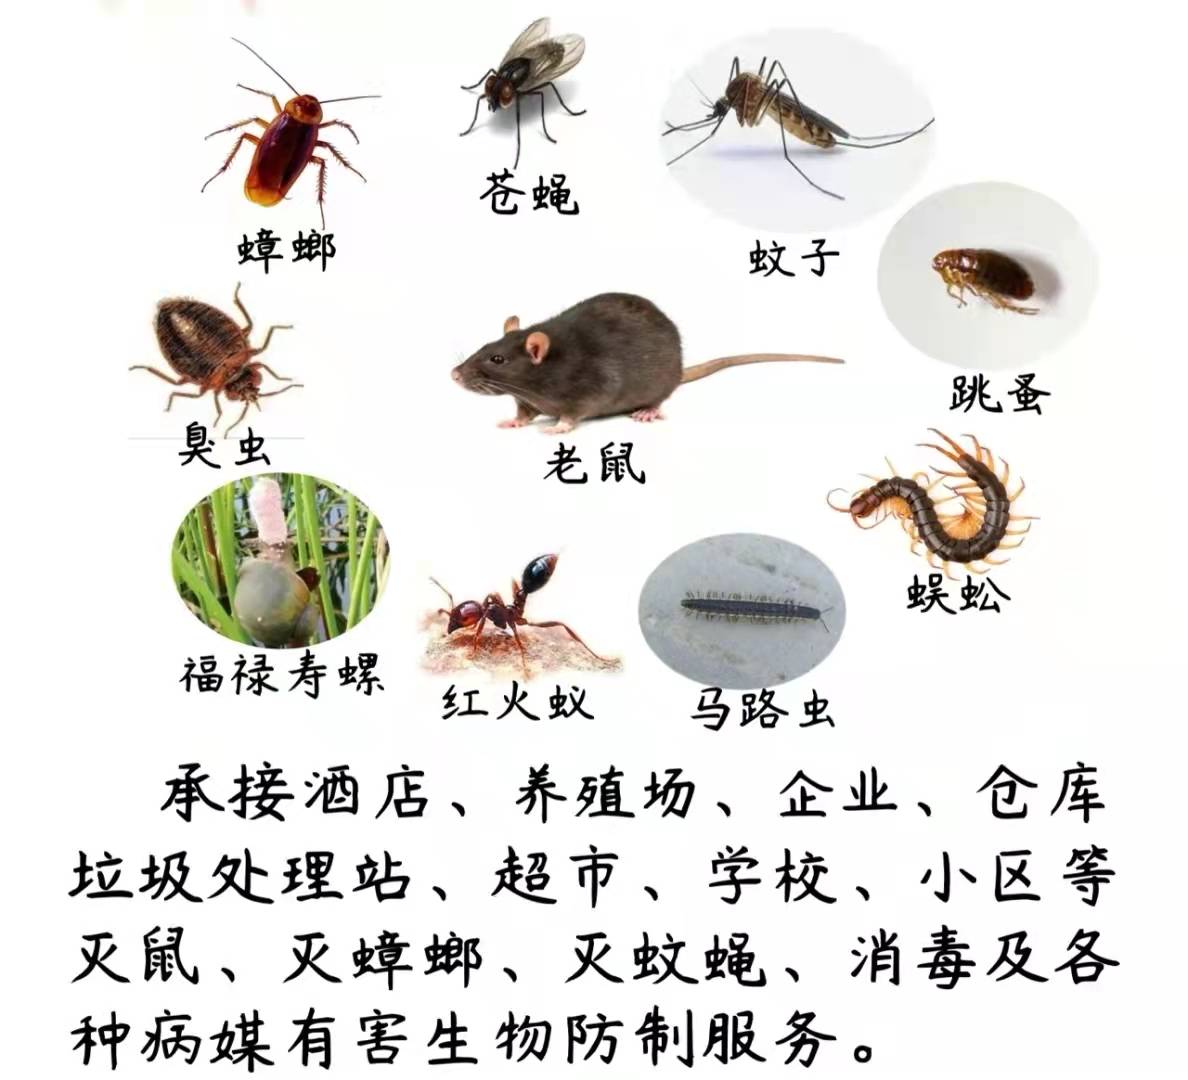 上海灭鼠公司蓝皇环保上门除虫灭鼠杀蟑螂除白蚁